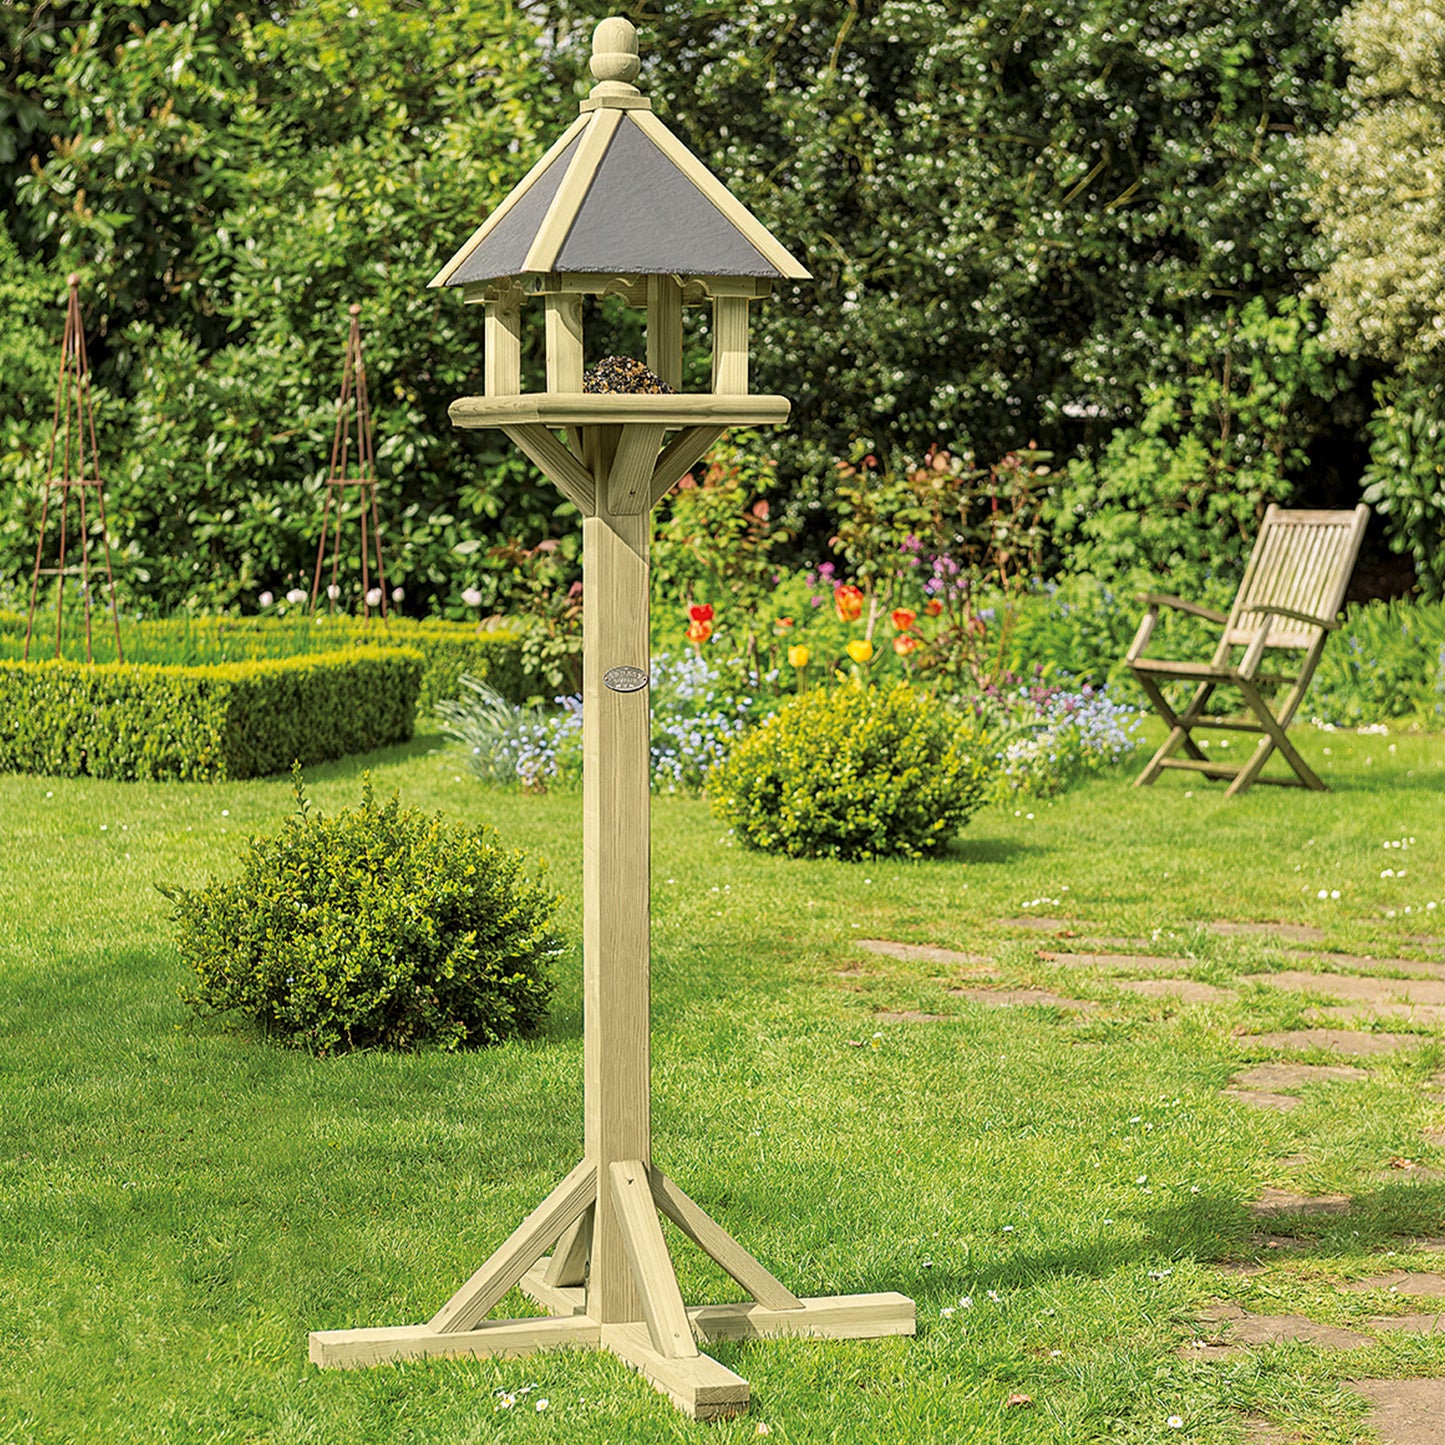 Gardman Supreme Wilton Bird Table in garden